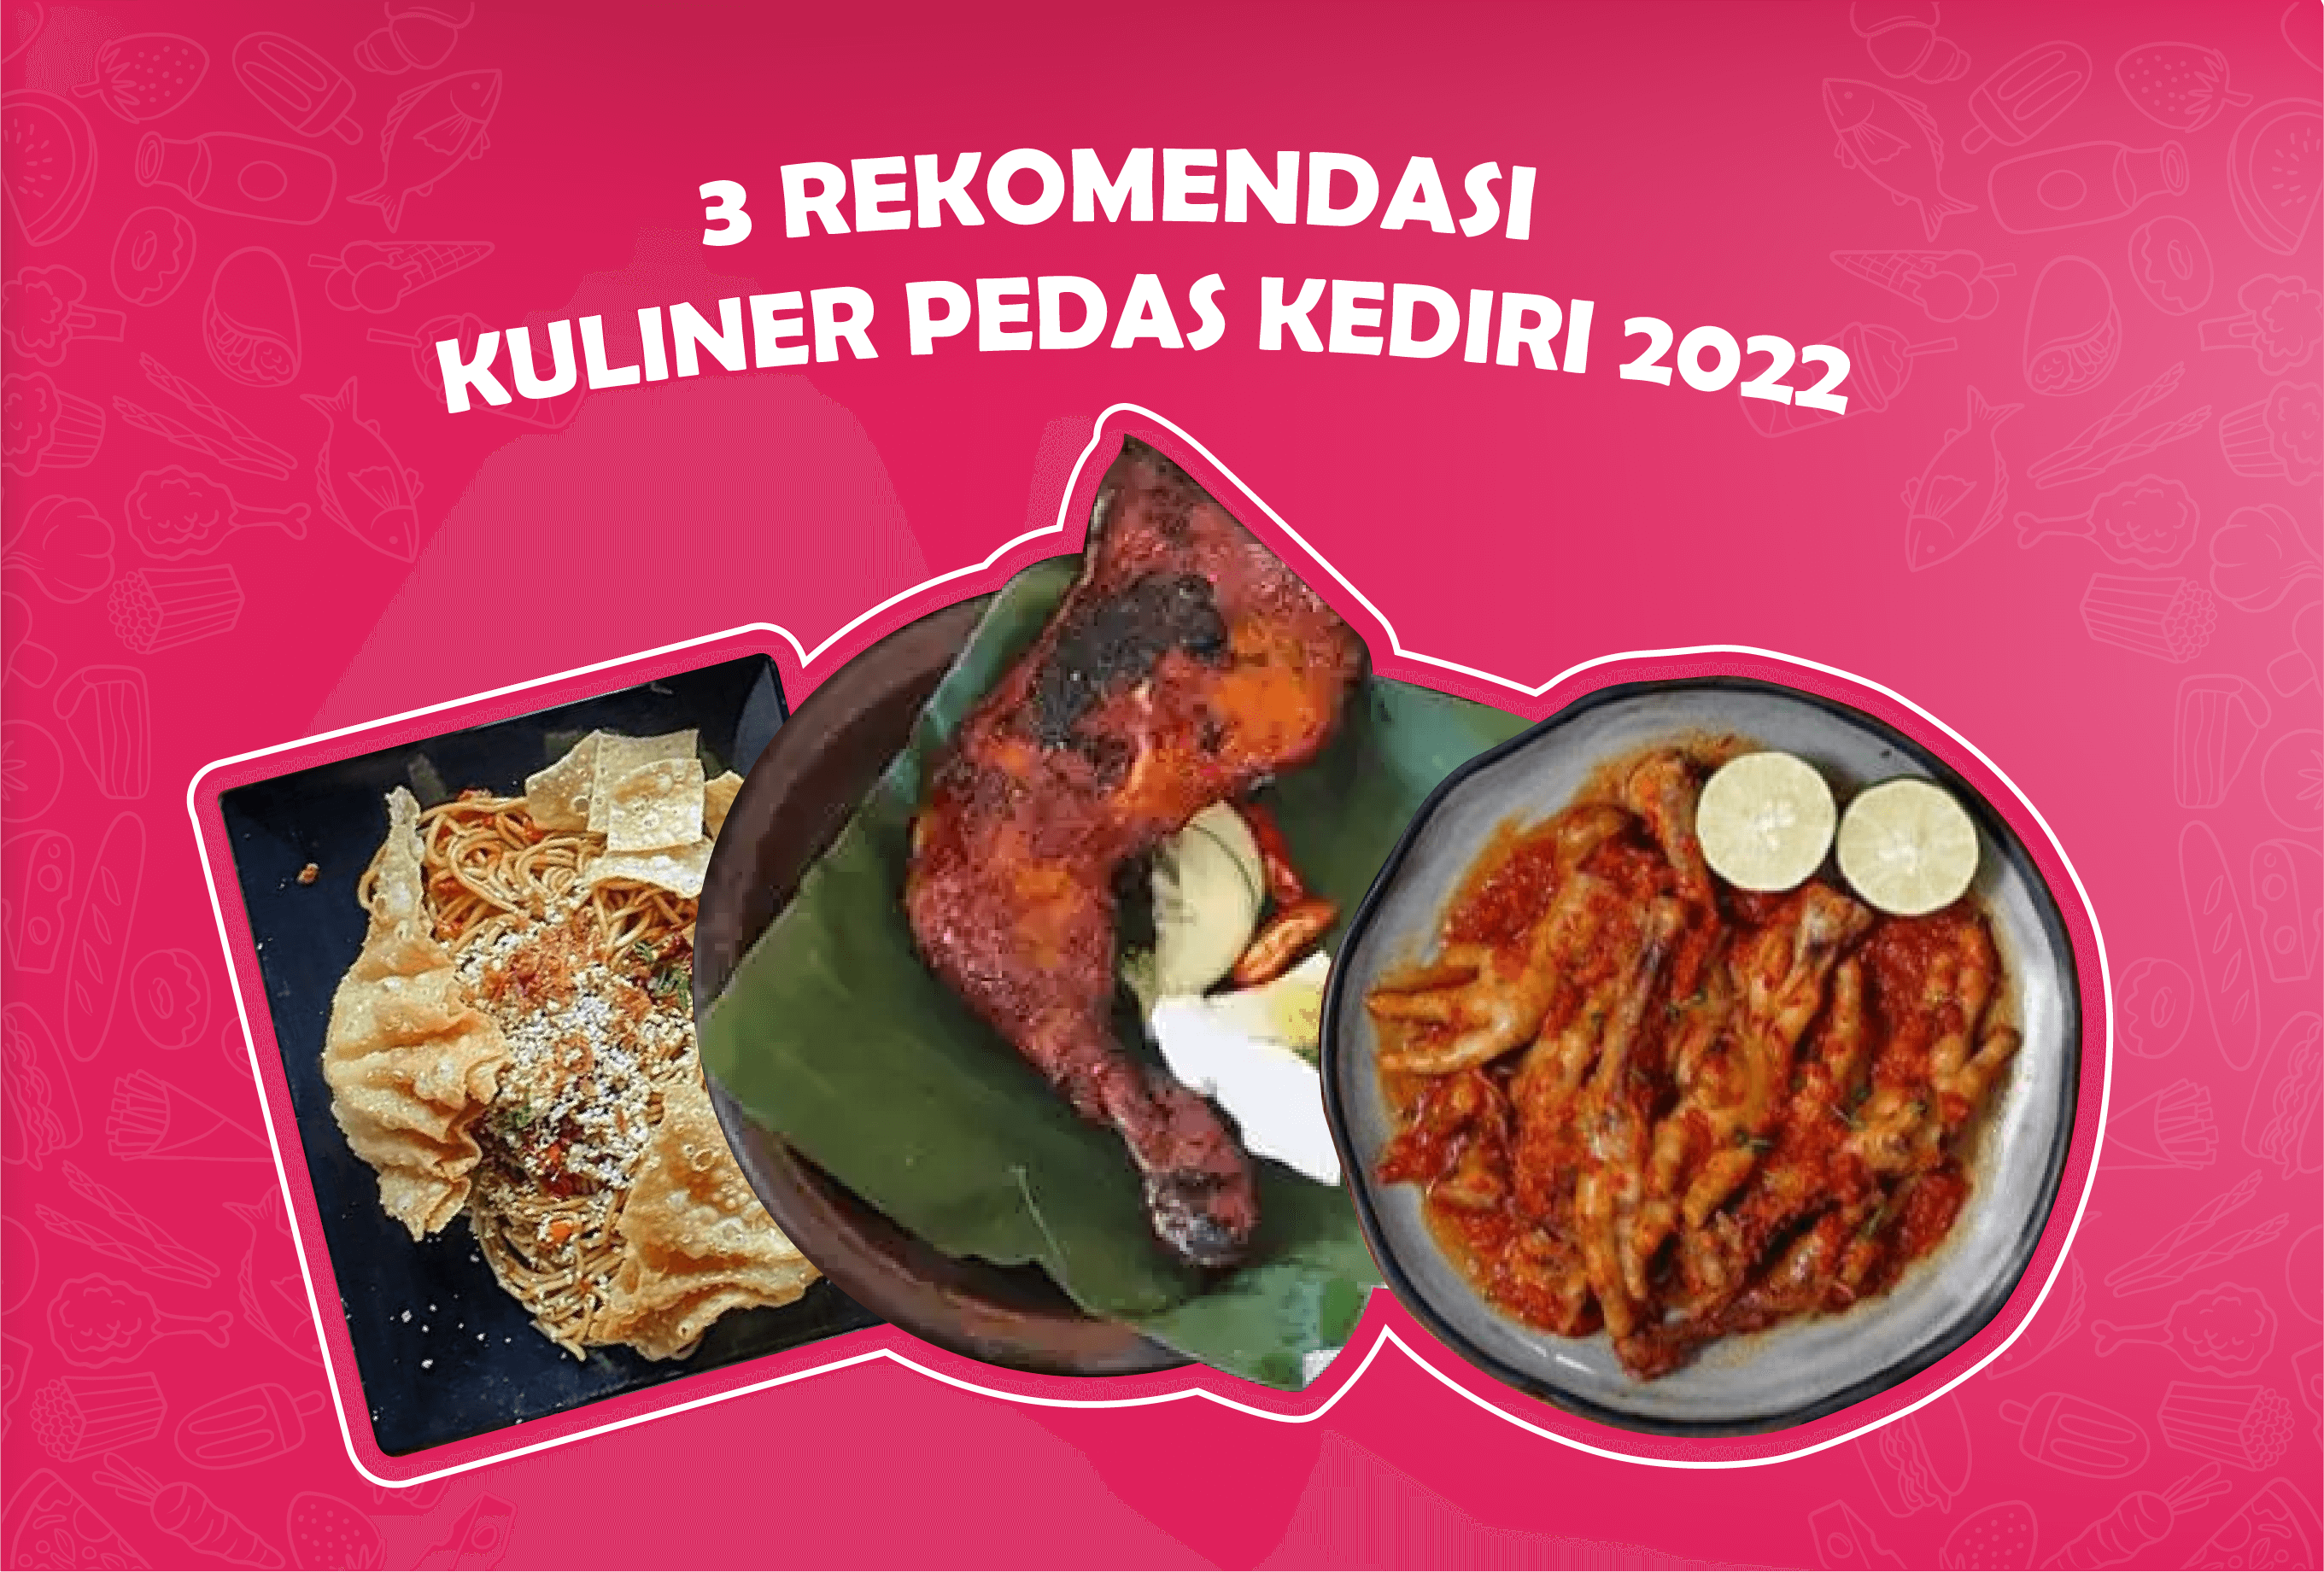 3 Rekomendasi Kuliner Pedas Kediri 2022 Dari Mie Sampai Ceker!